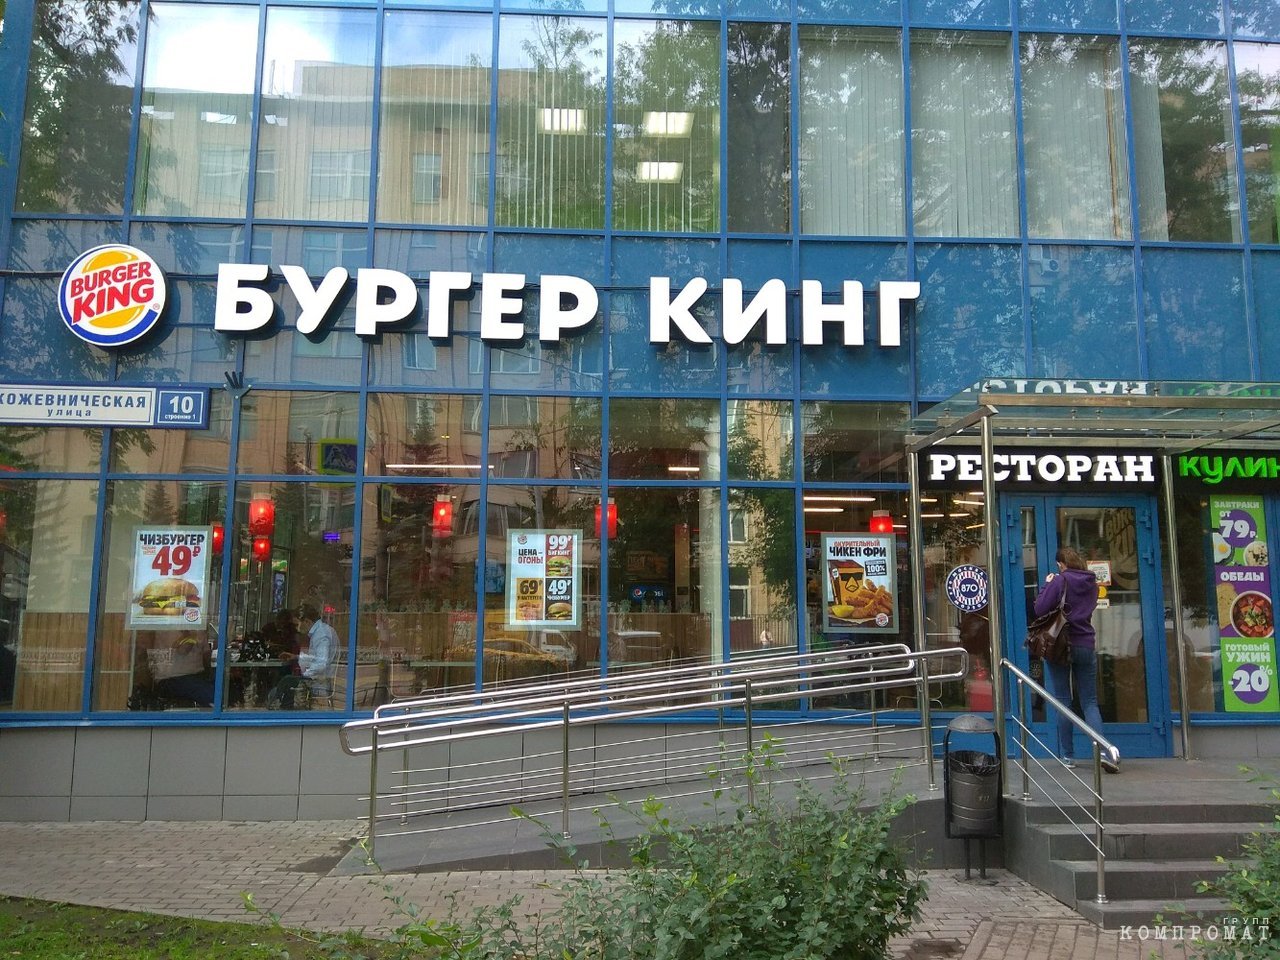 "Бургер кинг" на улице Кожевнической, 10. Владелец помещения подал против сети банкротный иск